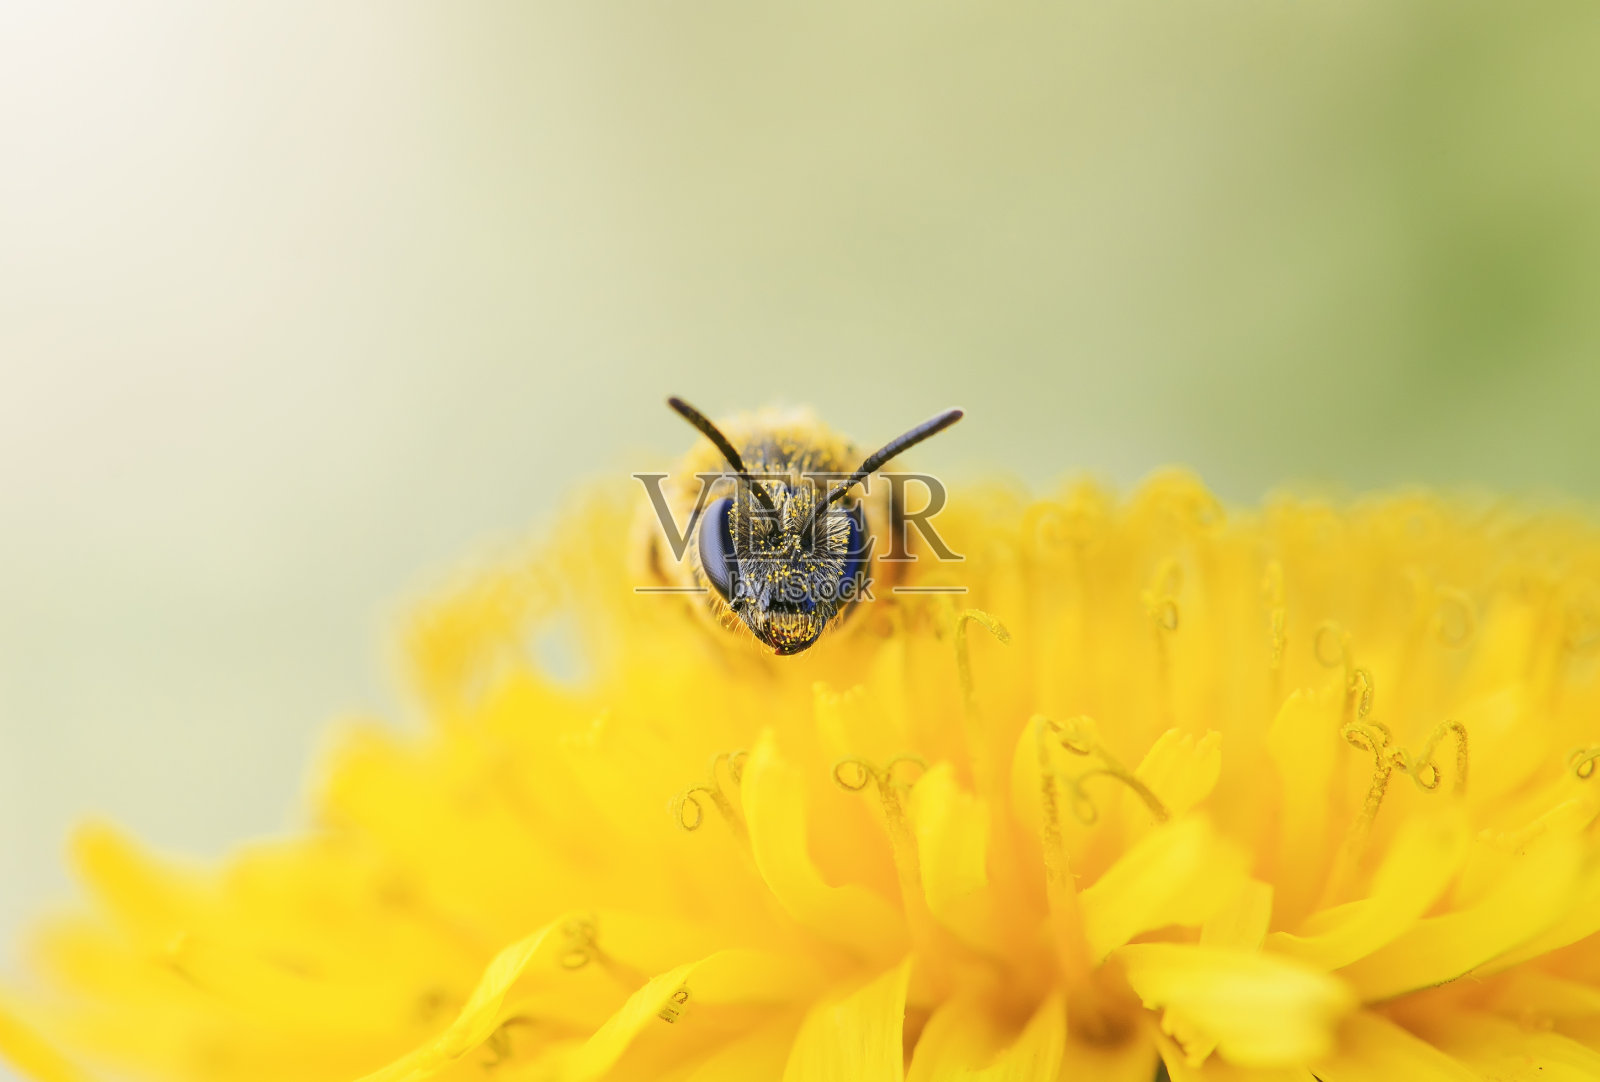 一只小黑蜂从蒲公英的黄色花朵上采集花蜜照片摄影图片